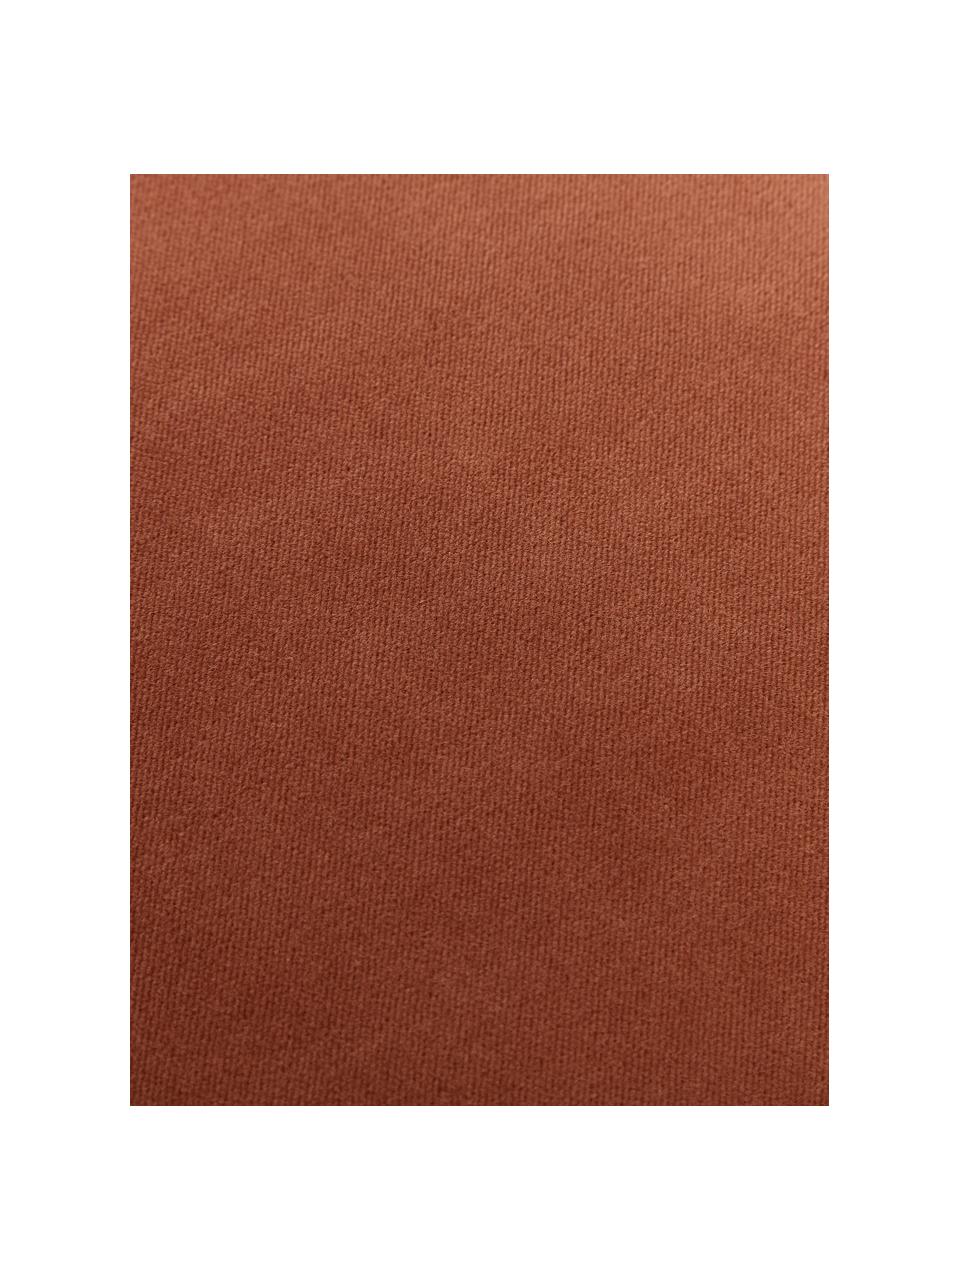 Einfarbige Samt-Kissenhülle Dana in Terrakotta, 100% Baumwollsamt, Terrakotta, B 40 x L 40 cm